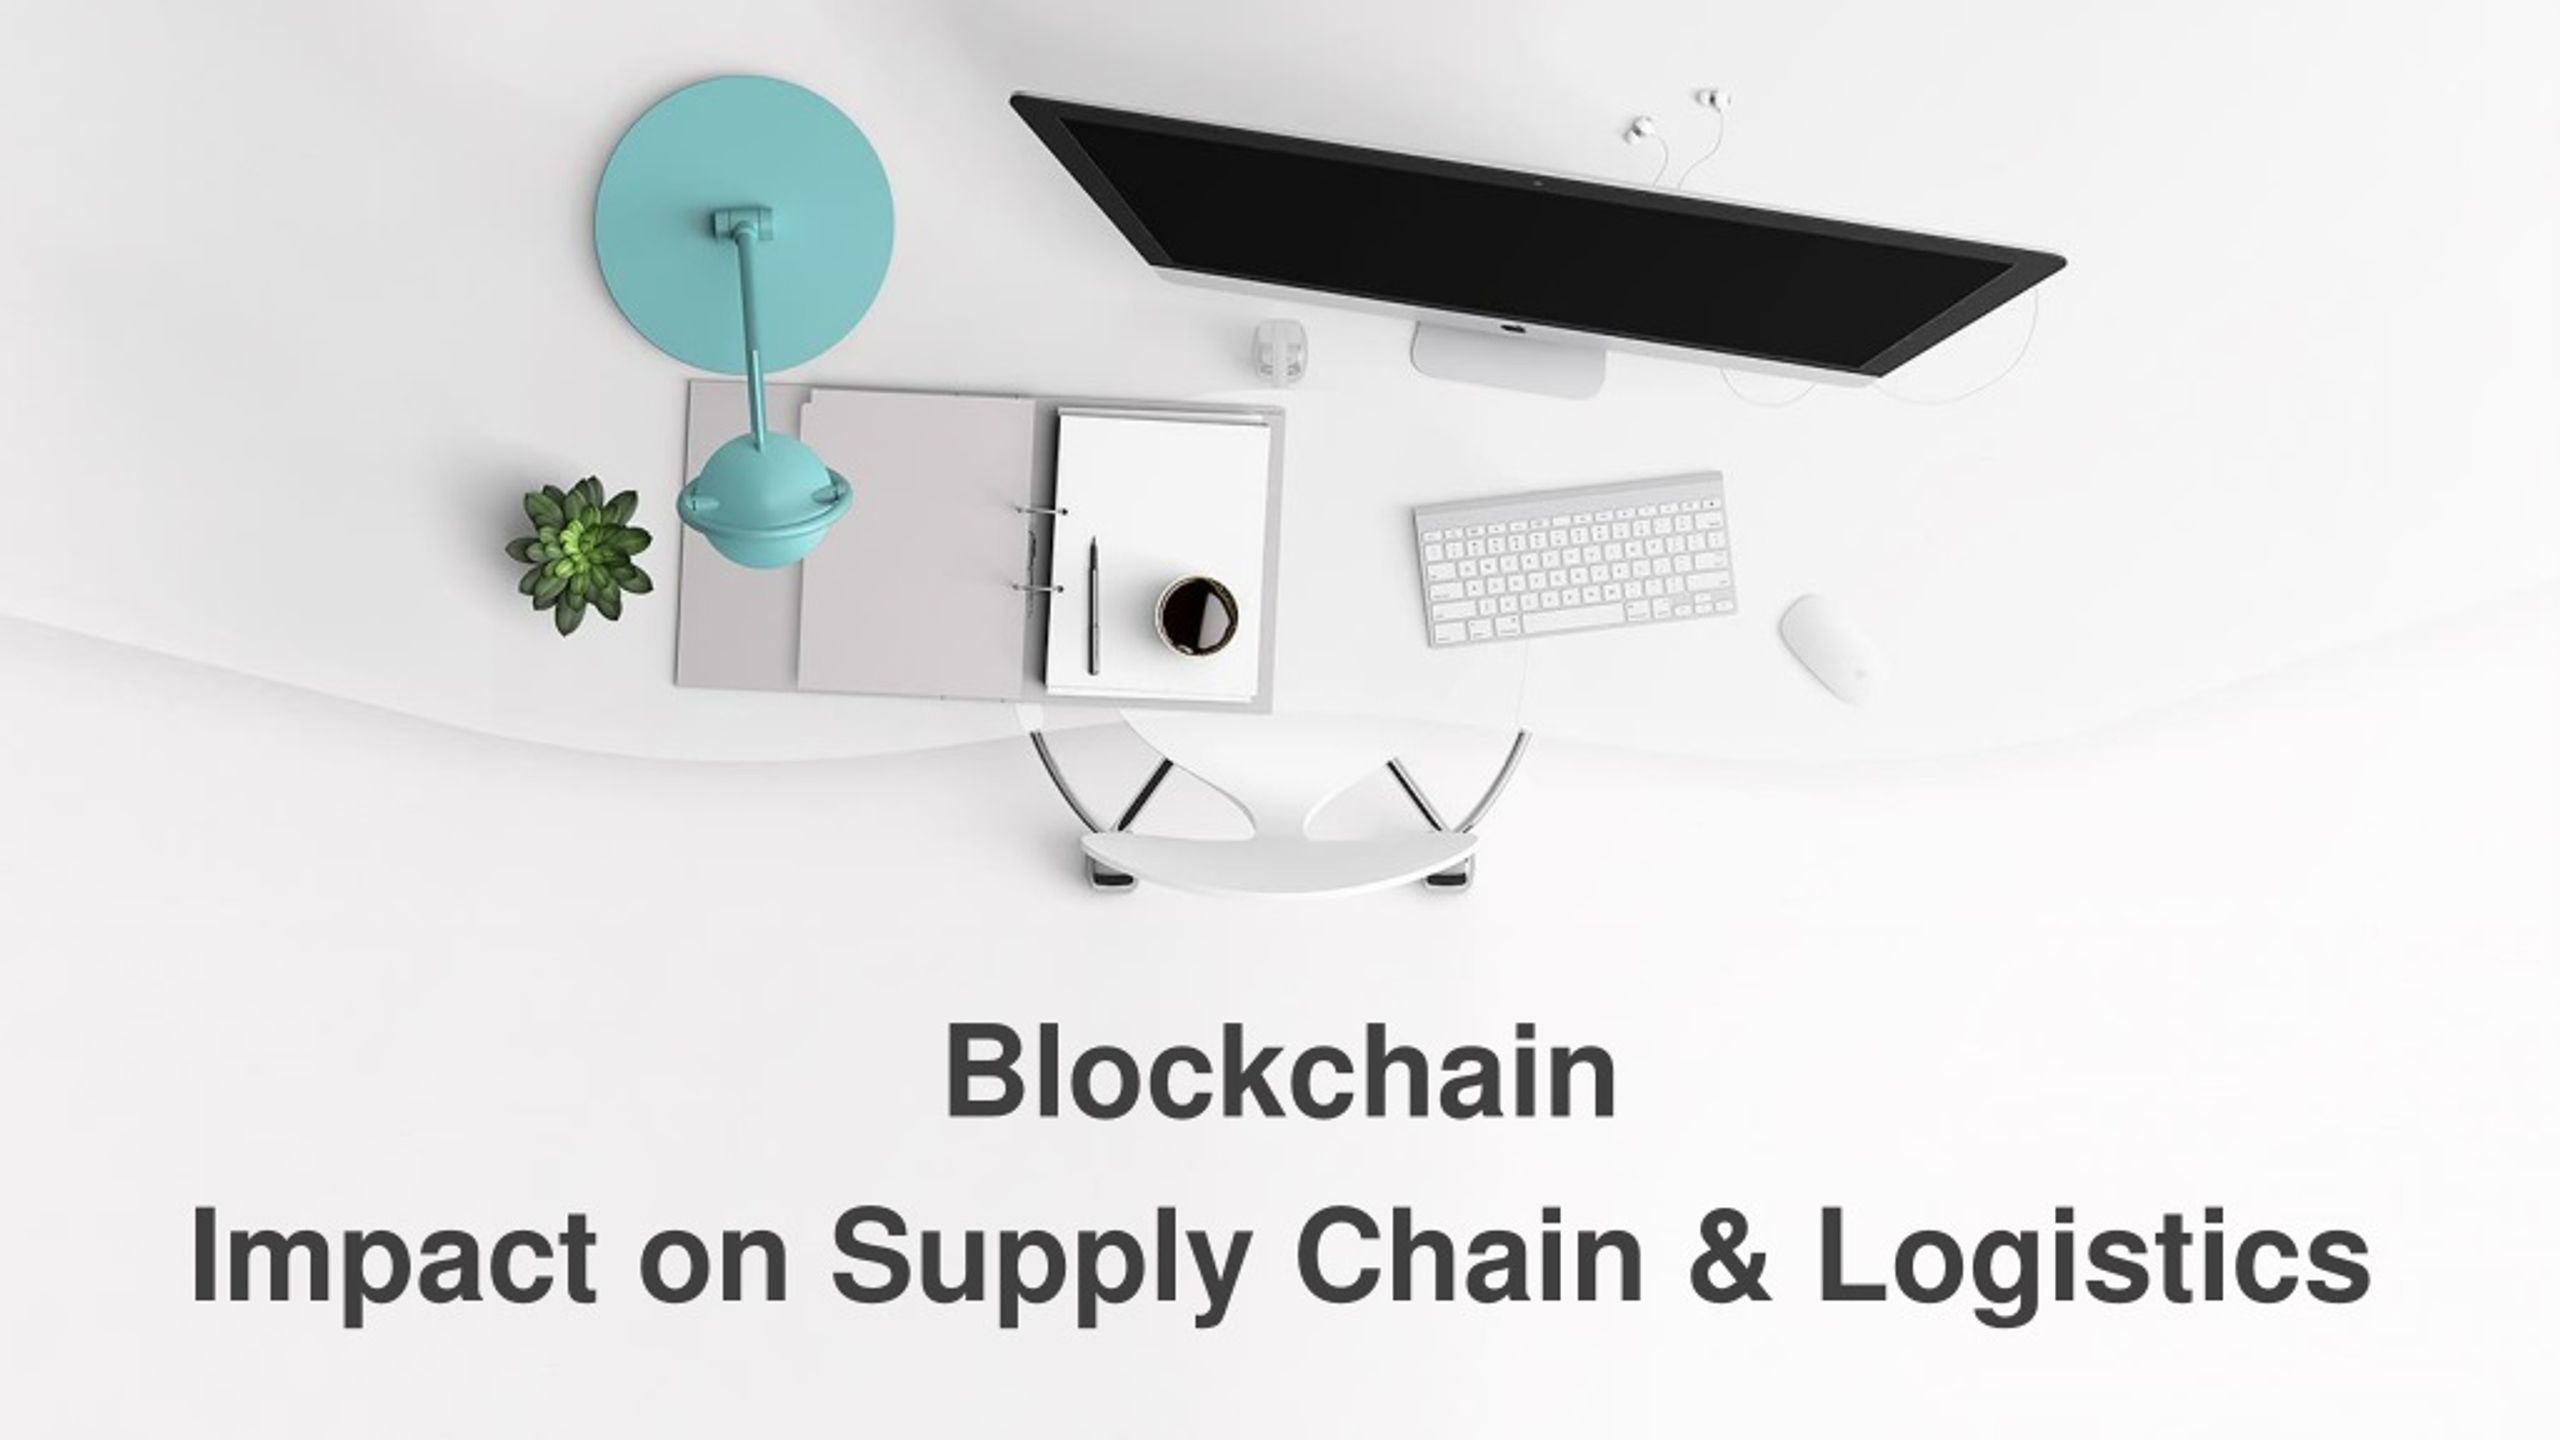 De Beers Diamond Co. Launches Blockchain Logistics Platform